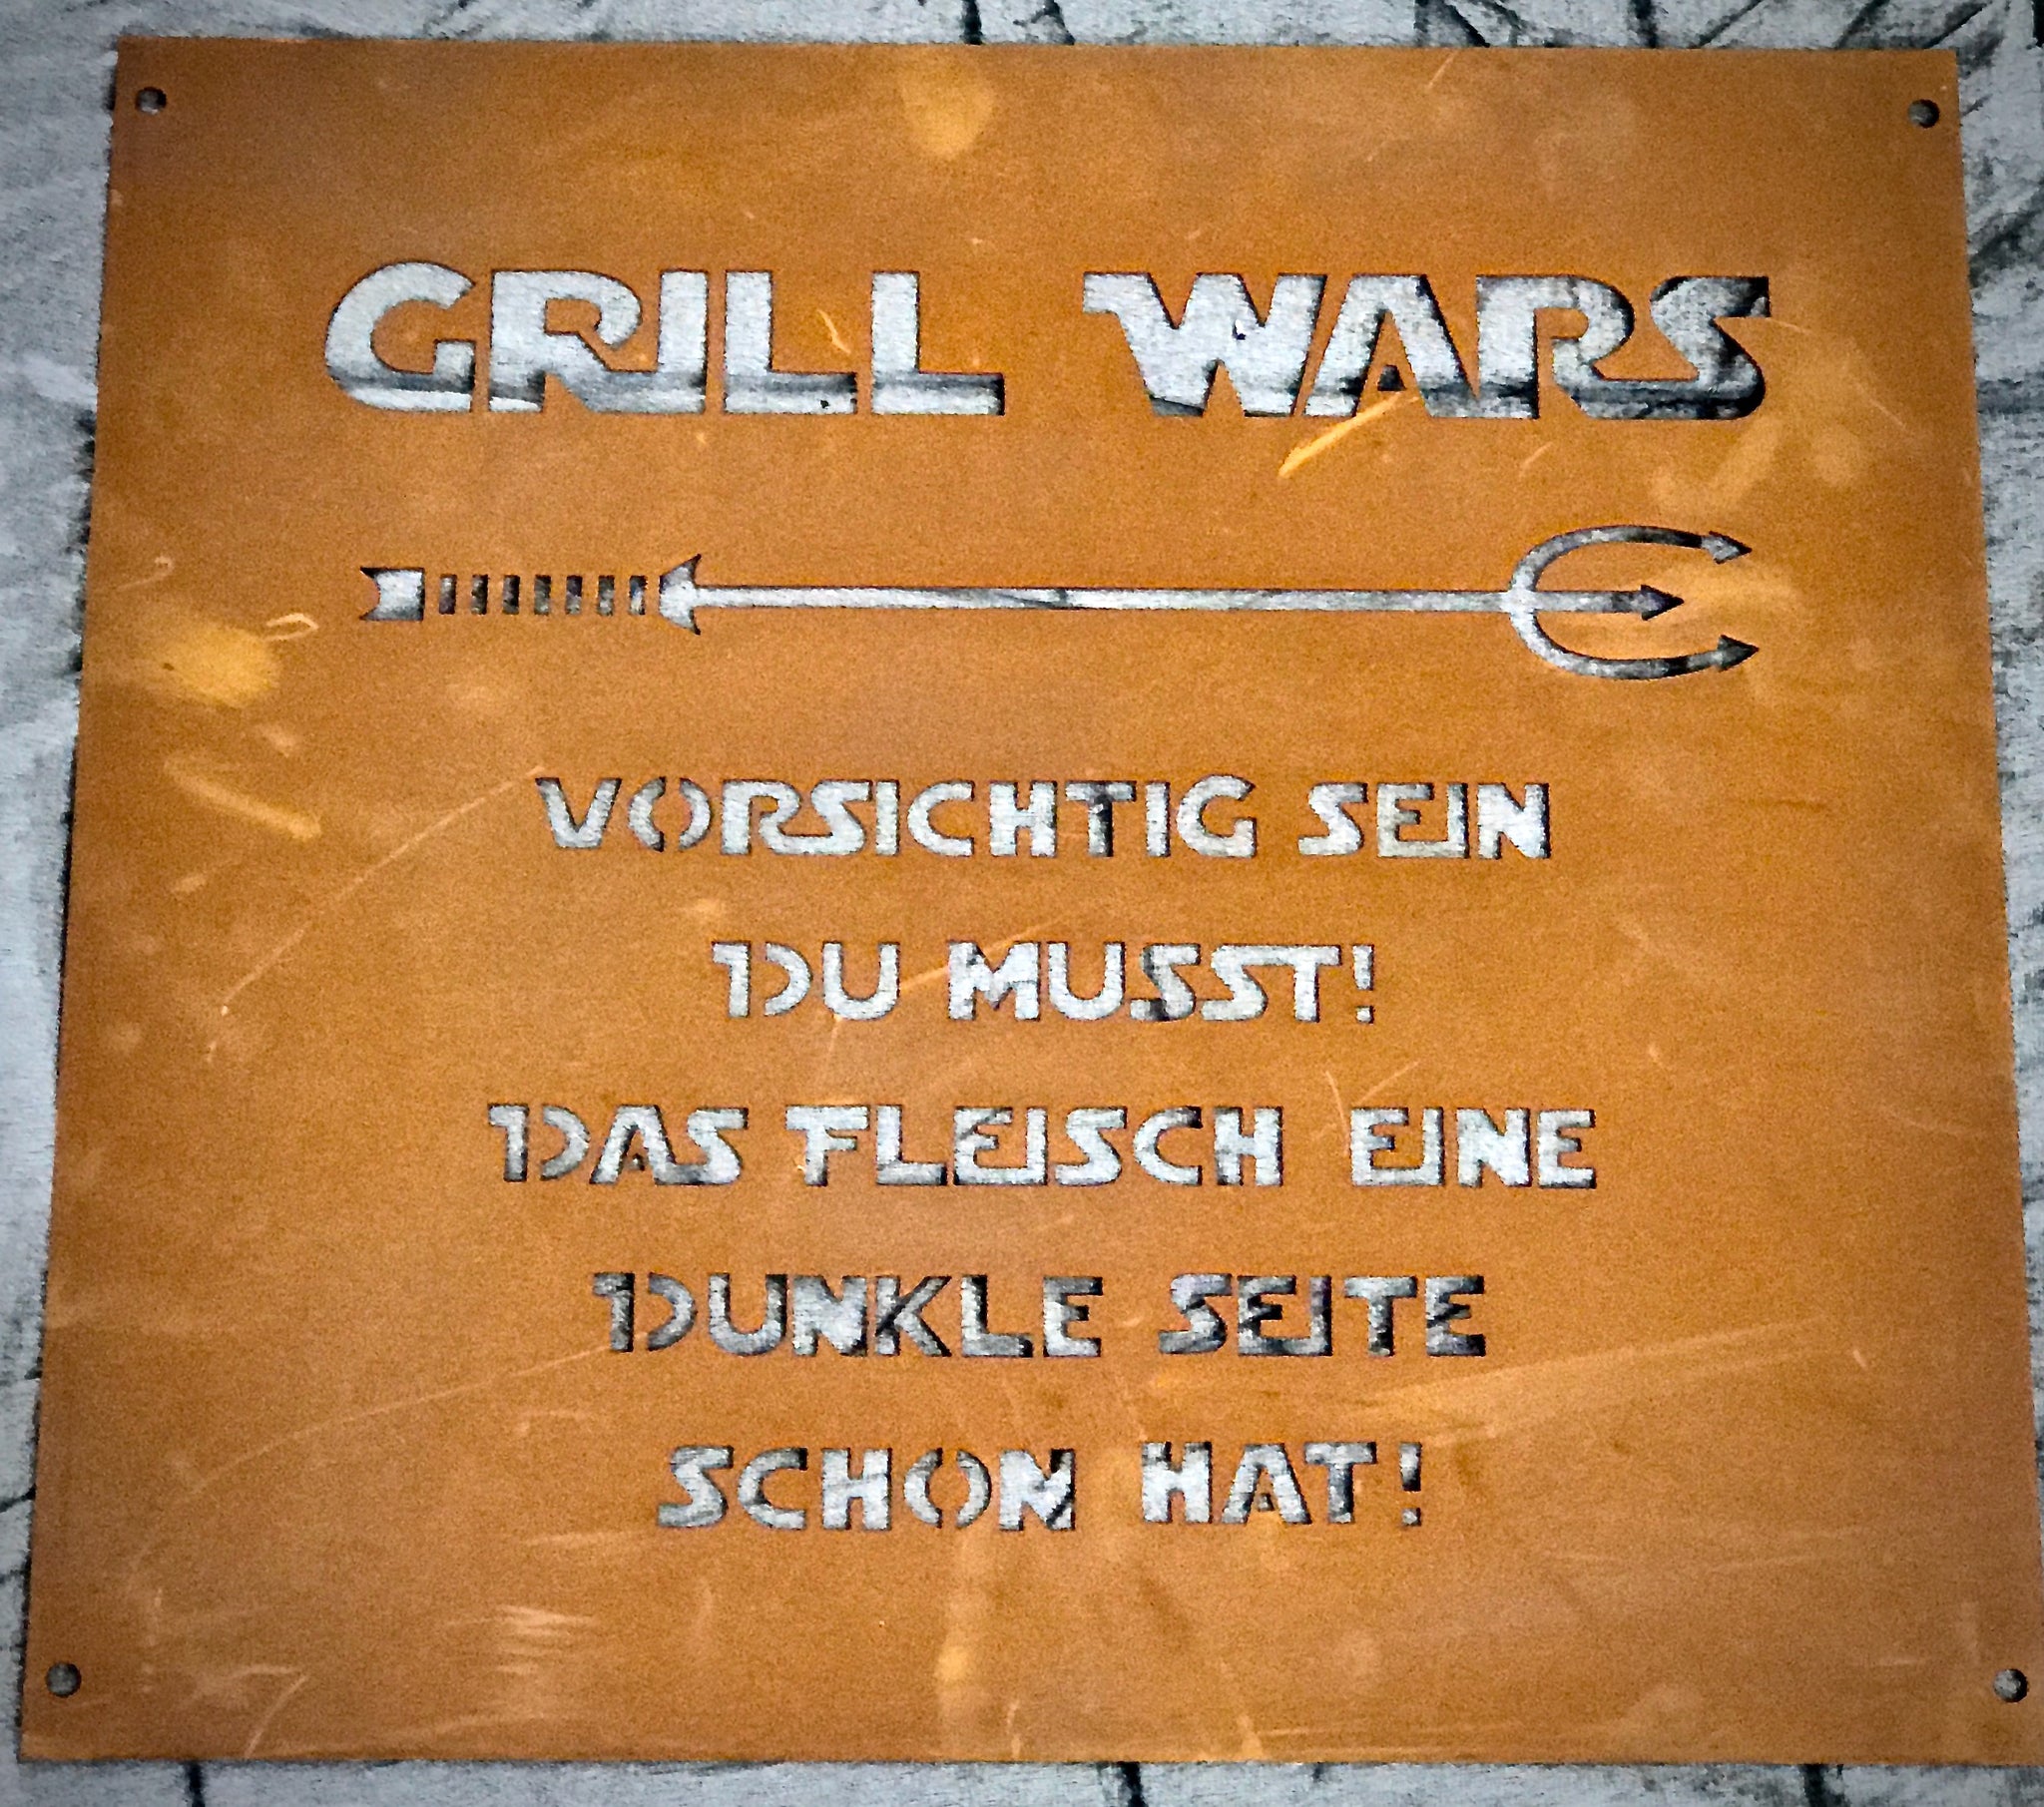 Rostschild "Grill Wars"